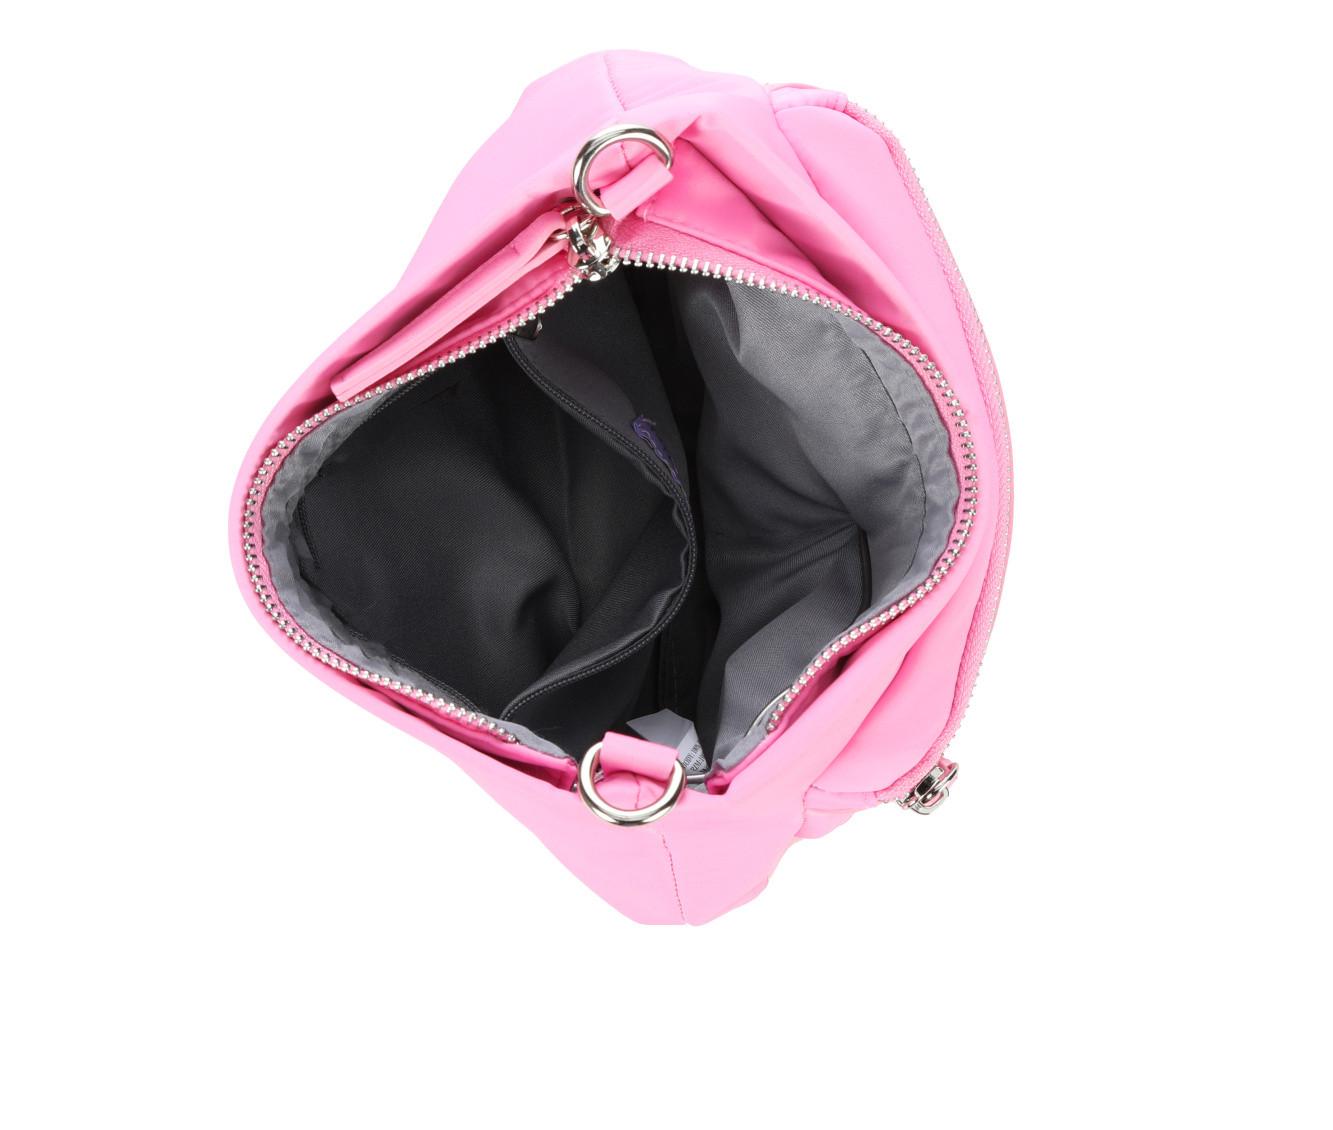 Madden Girl Nylon Crossbody Handbag